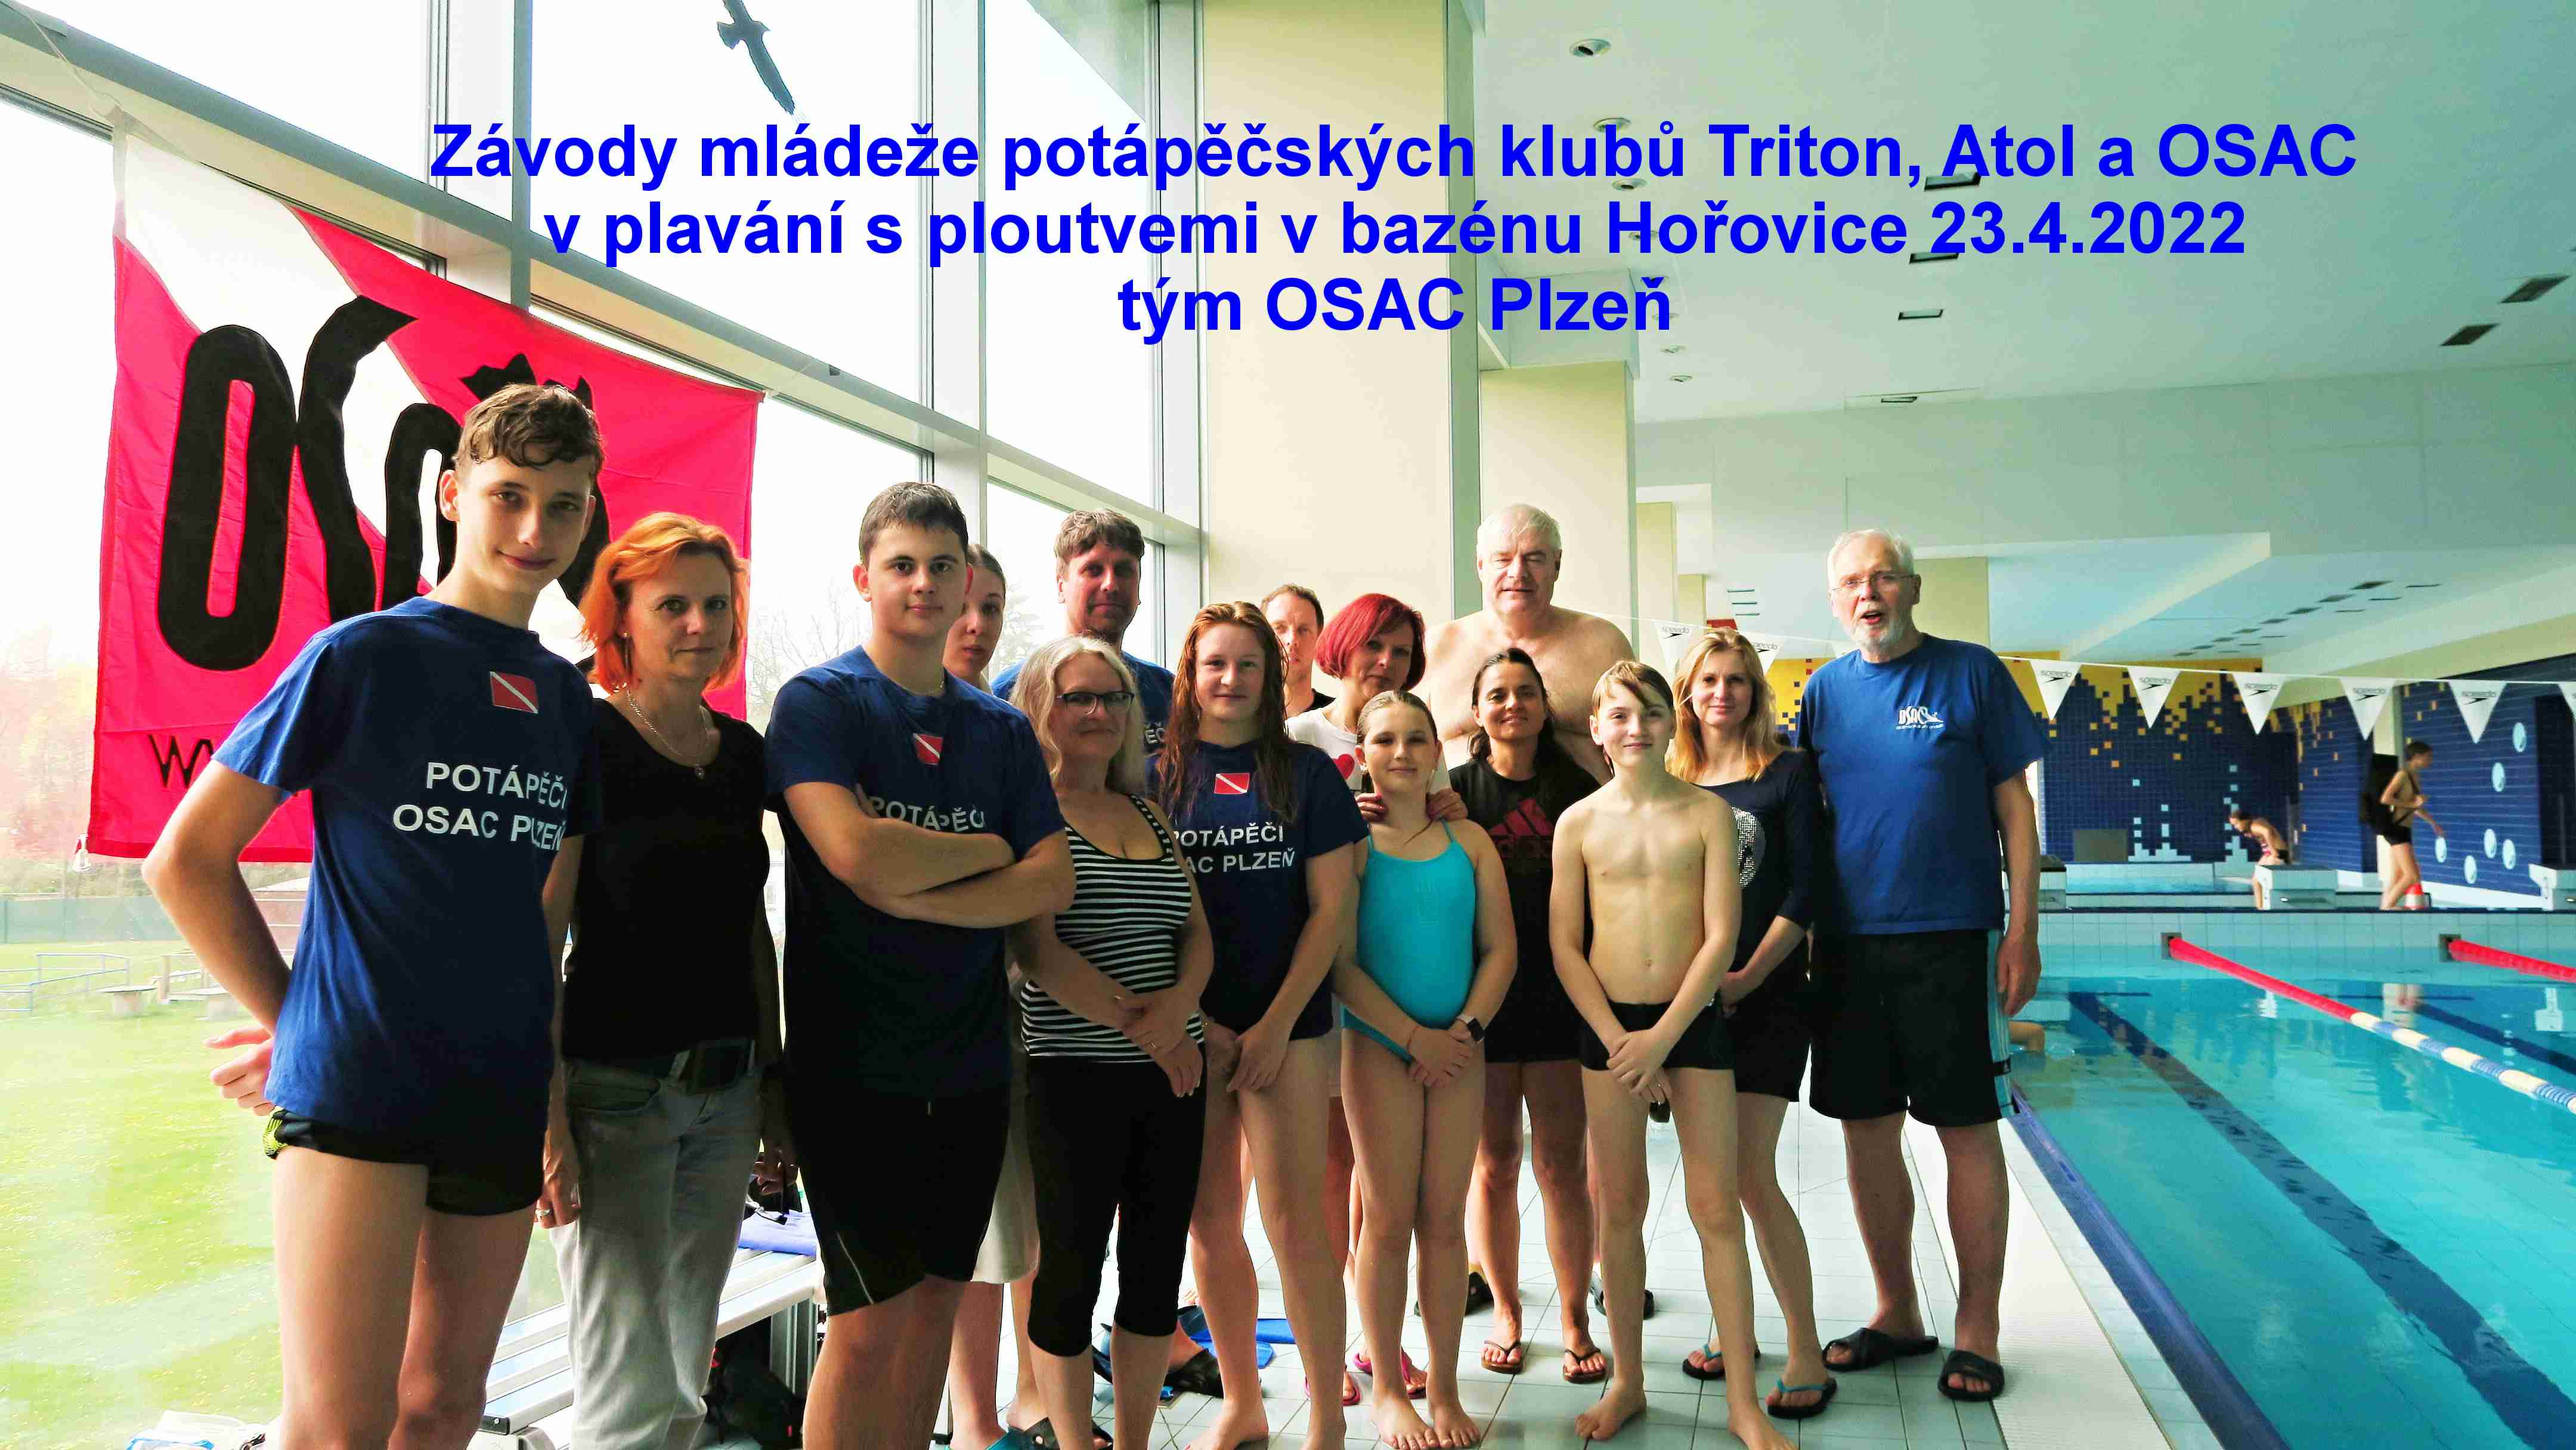 Přečtete si více ze článku Výborné závody mládeže klubů Triton, Atol a OSAC v bazénu Hořovice 23.4.2022